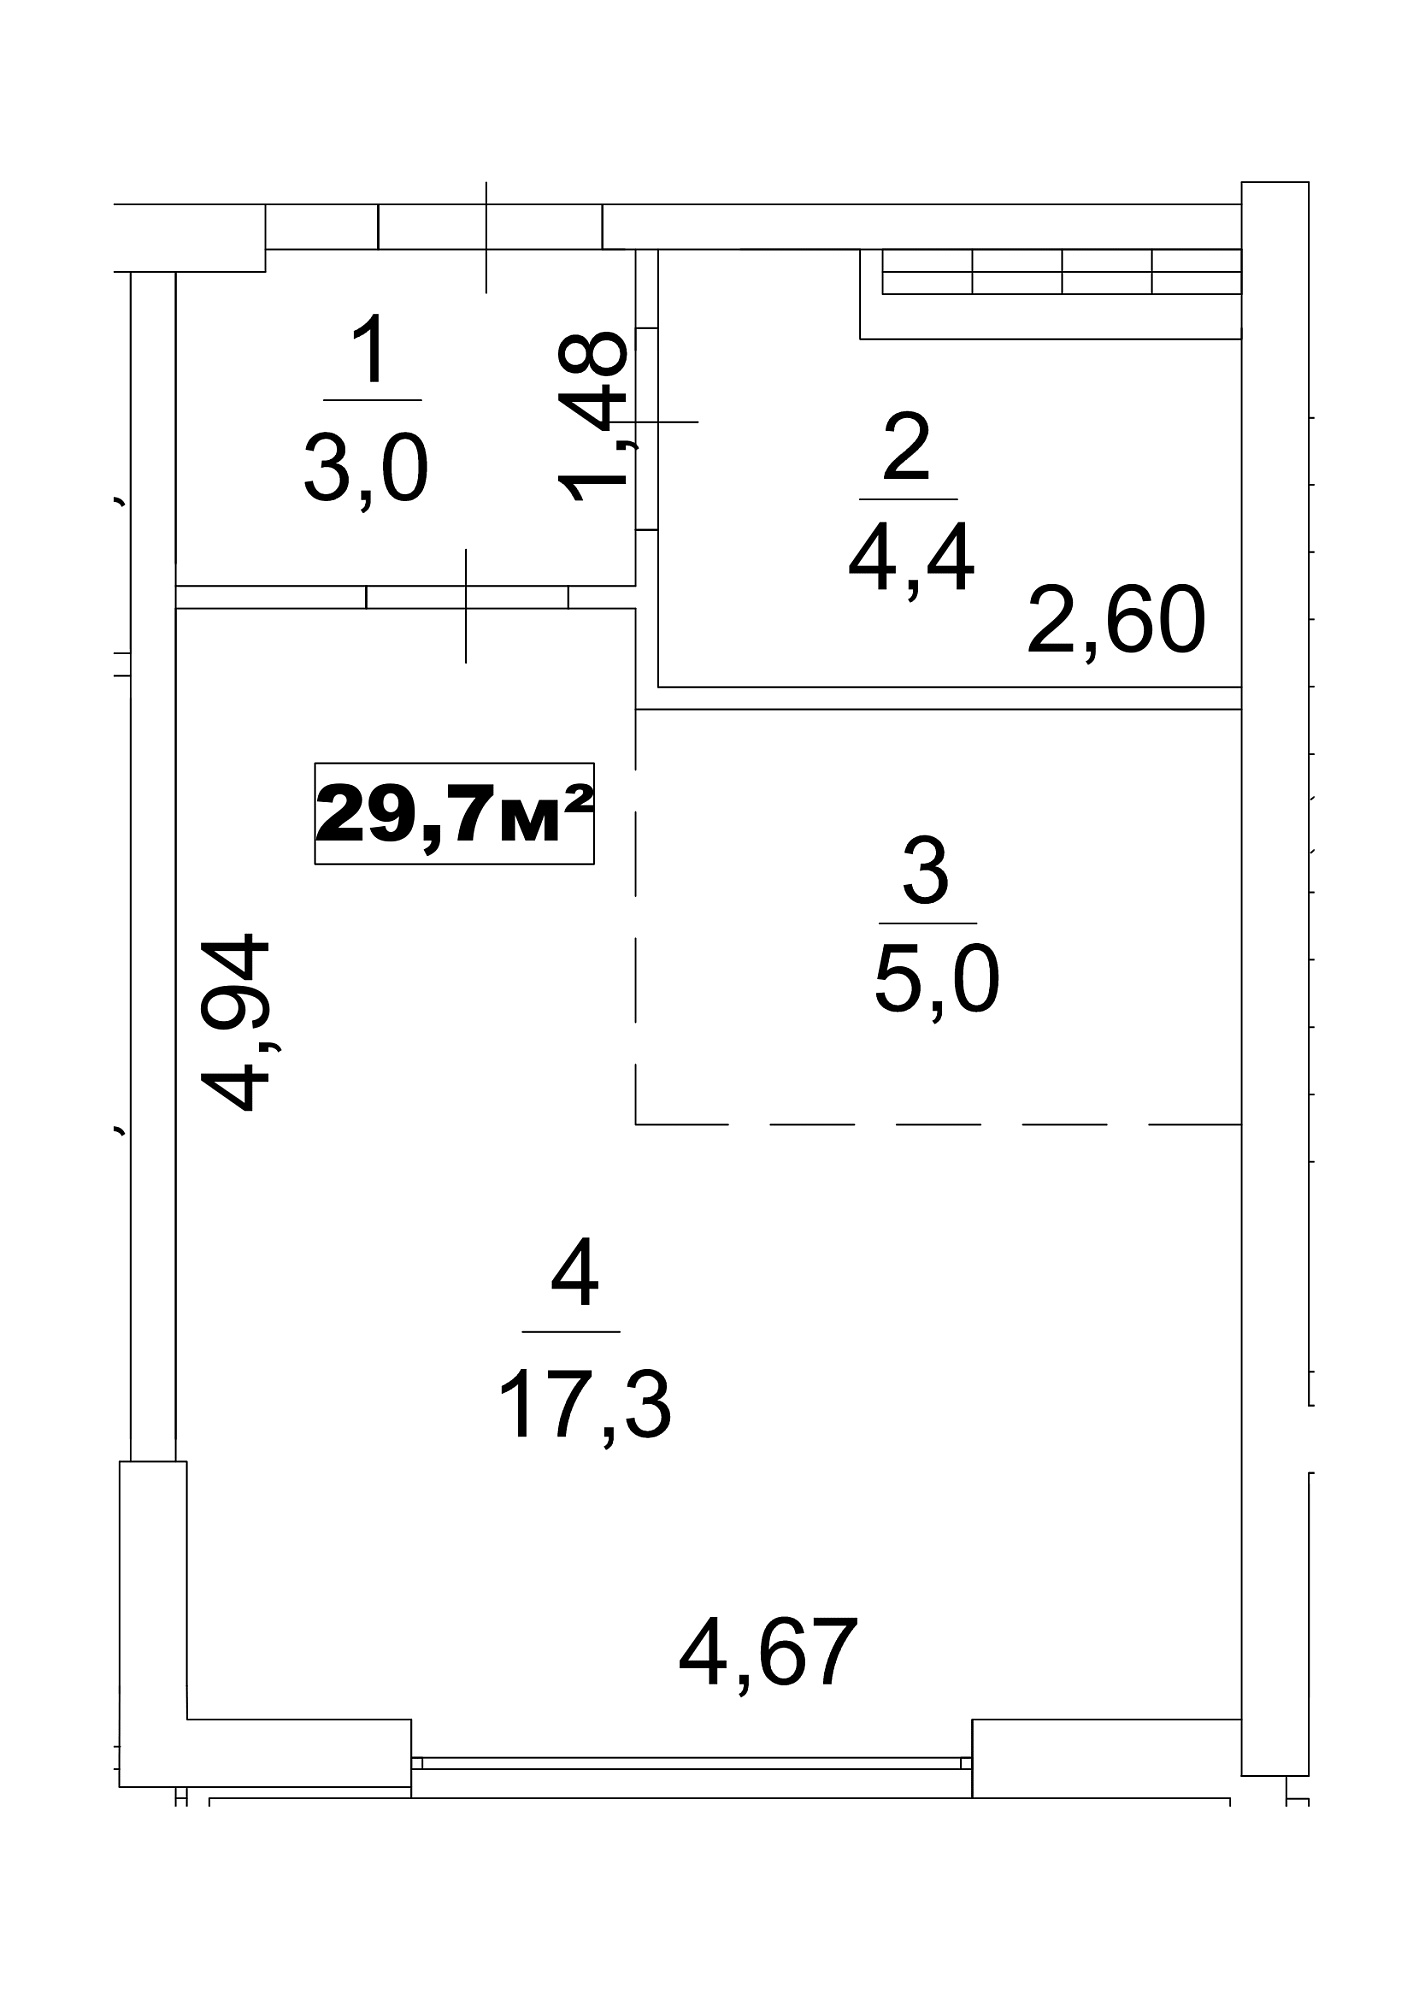 Планування Smart-квартира площею 29.7м2, AB-13-01/00001.